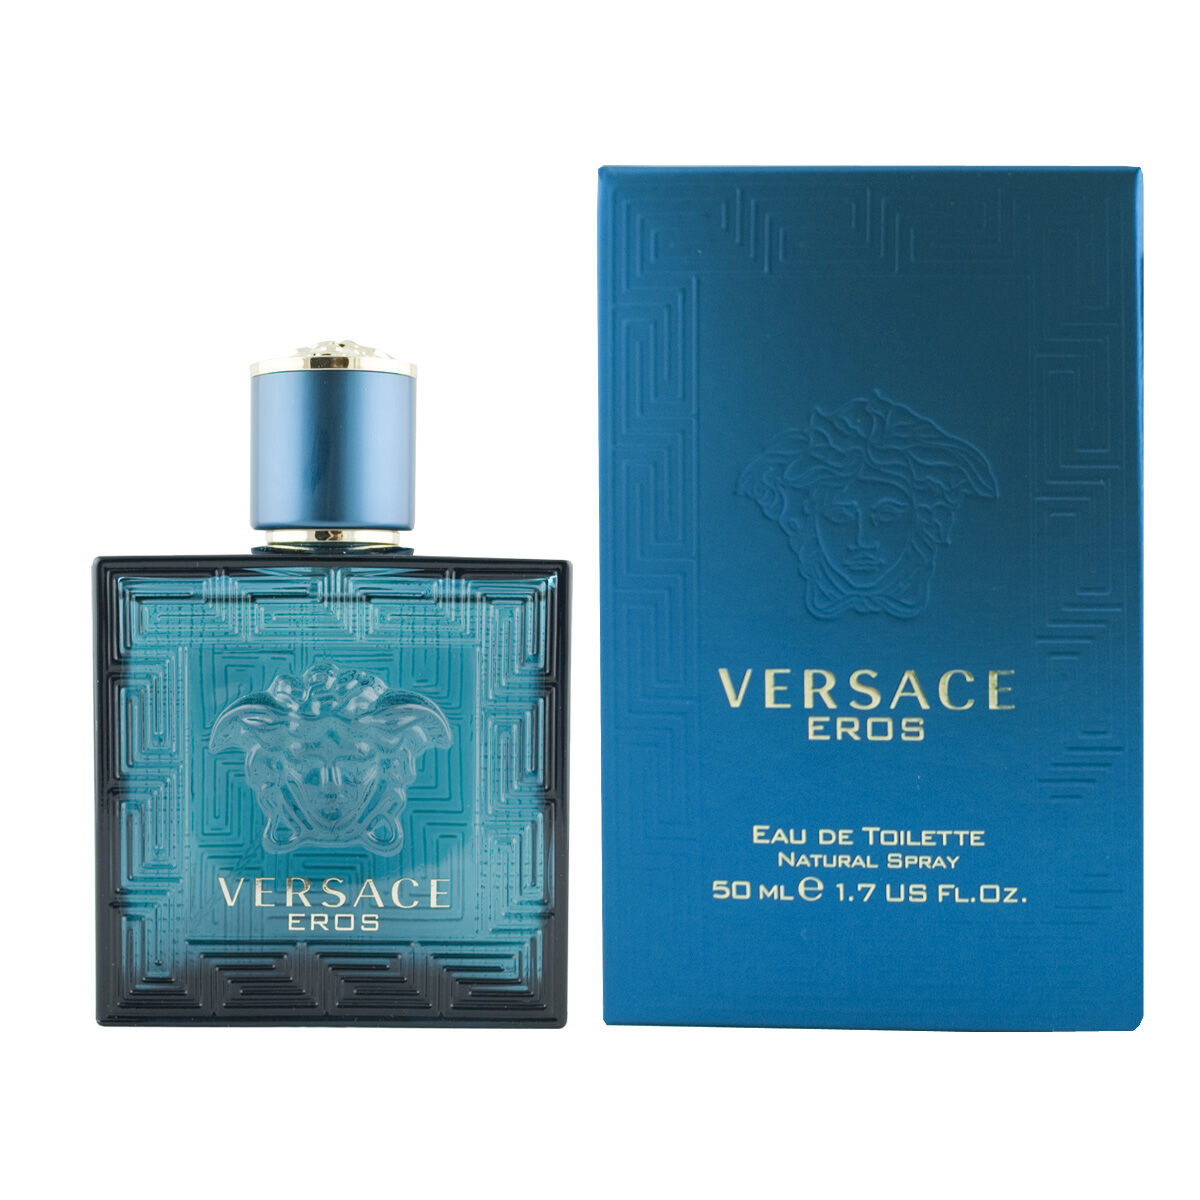 Tuntitarjouksena verkkokaupassamme Korhone: Parfyymit & Kosmetiikka on Miesten parfyymi Versace Eros 50 ml